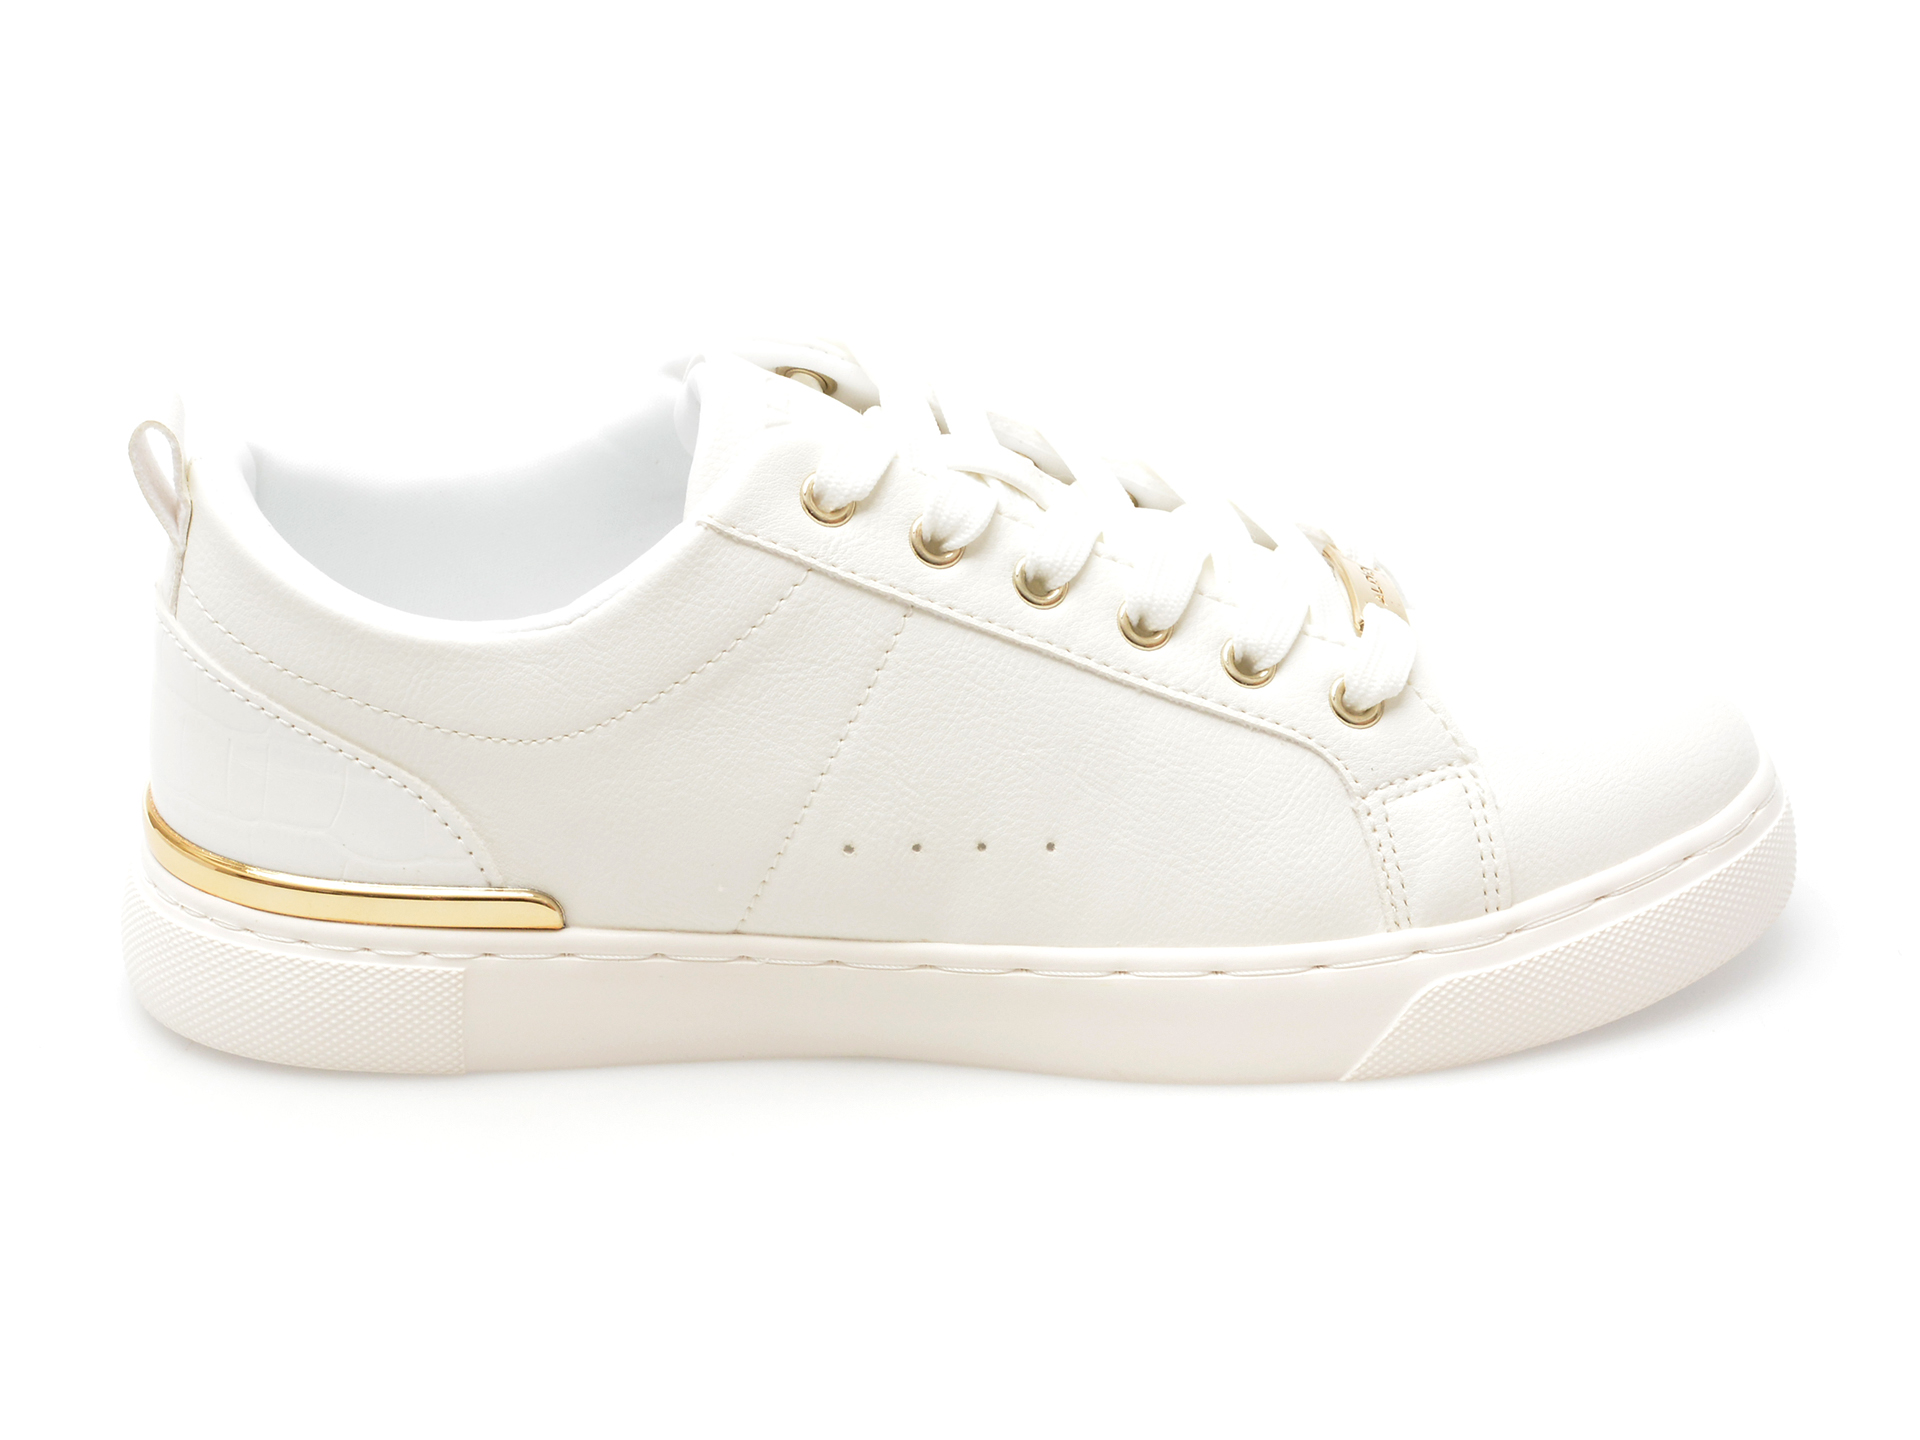 Pantofi ALDO albi, DILATHIELLE100, din piele ecologica